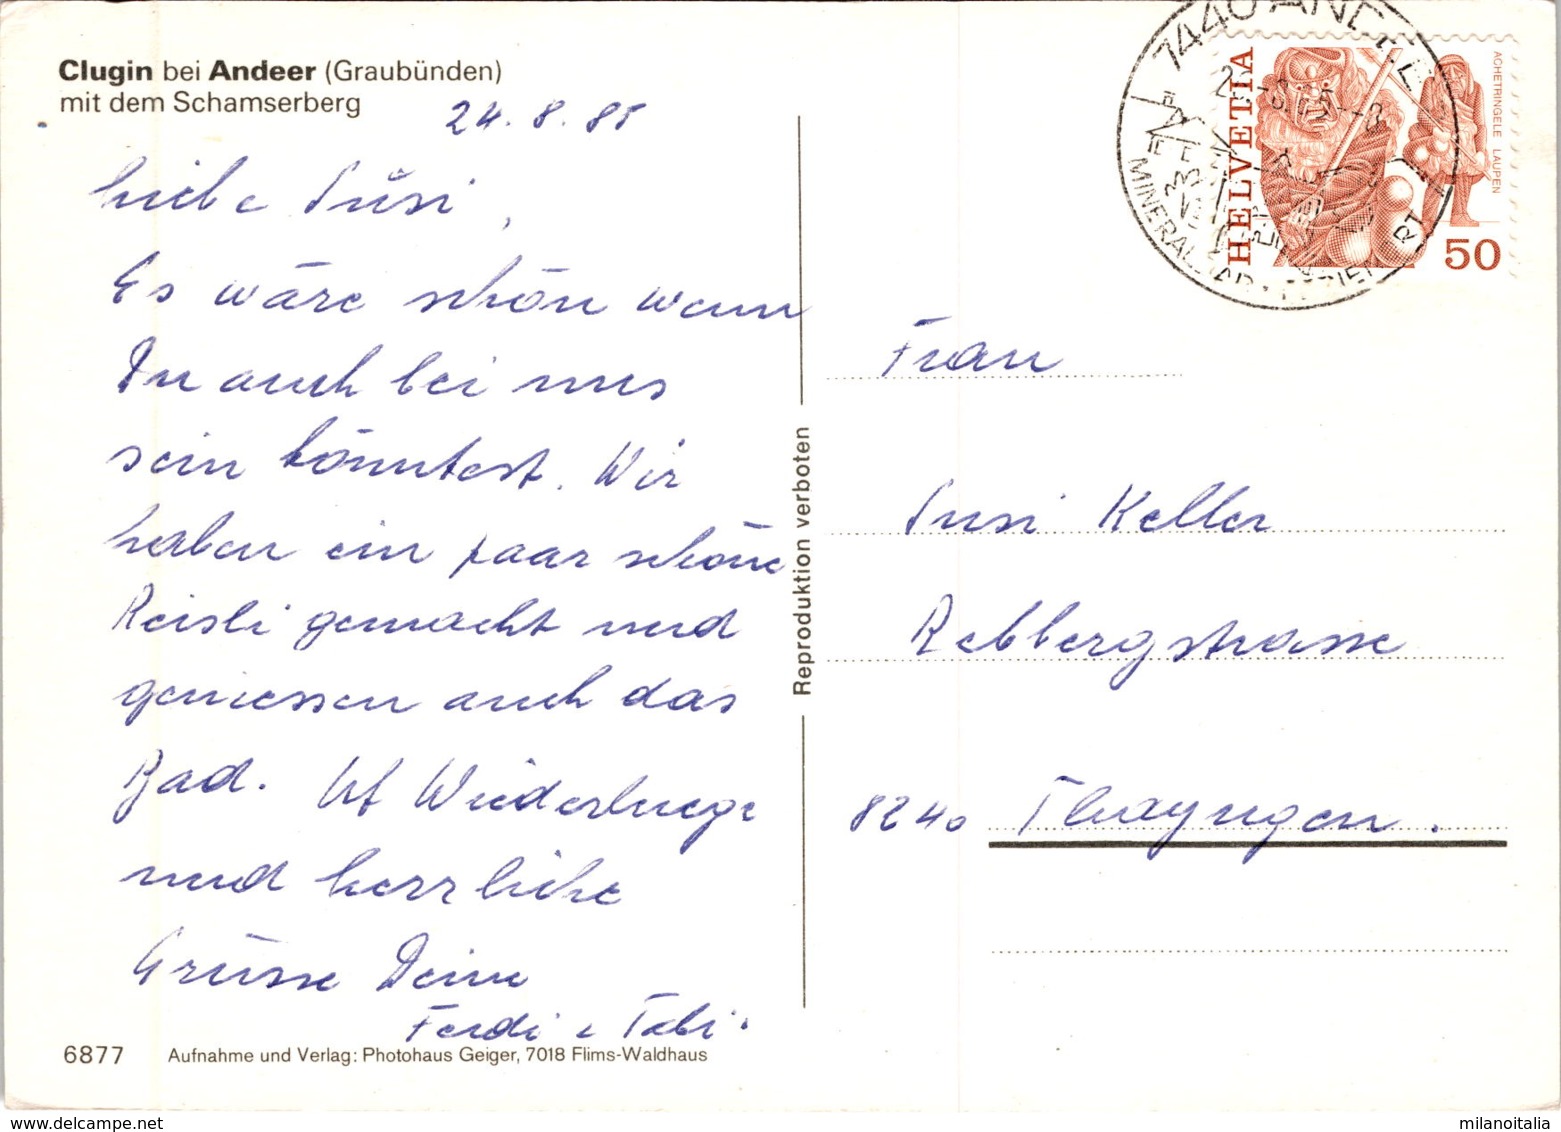 Clugin Bei Andeer Mit Dem Schamserberg (6877) * 26. 8. 1985 - Andeer